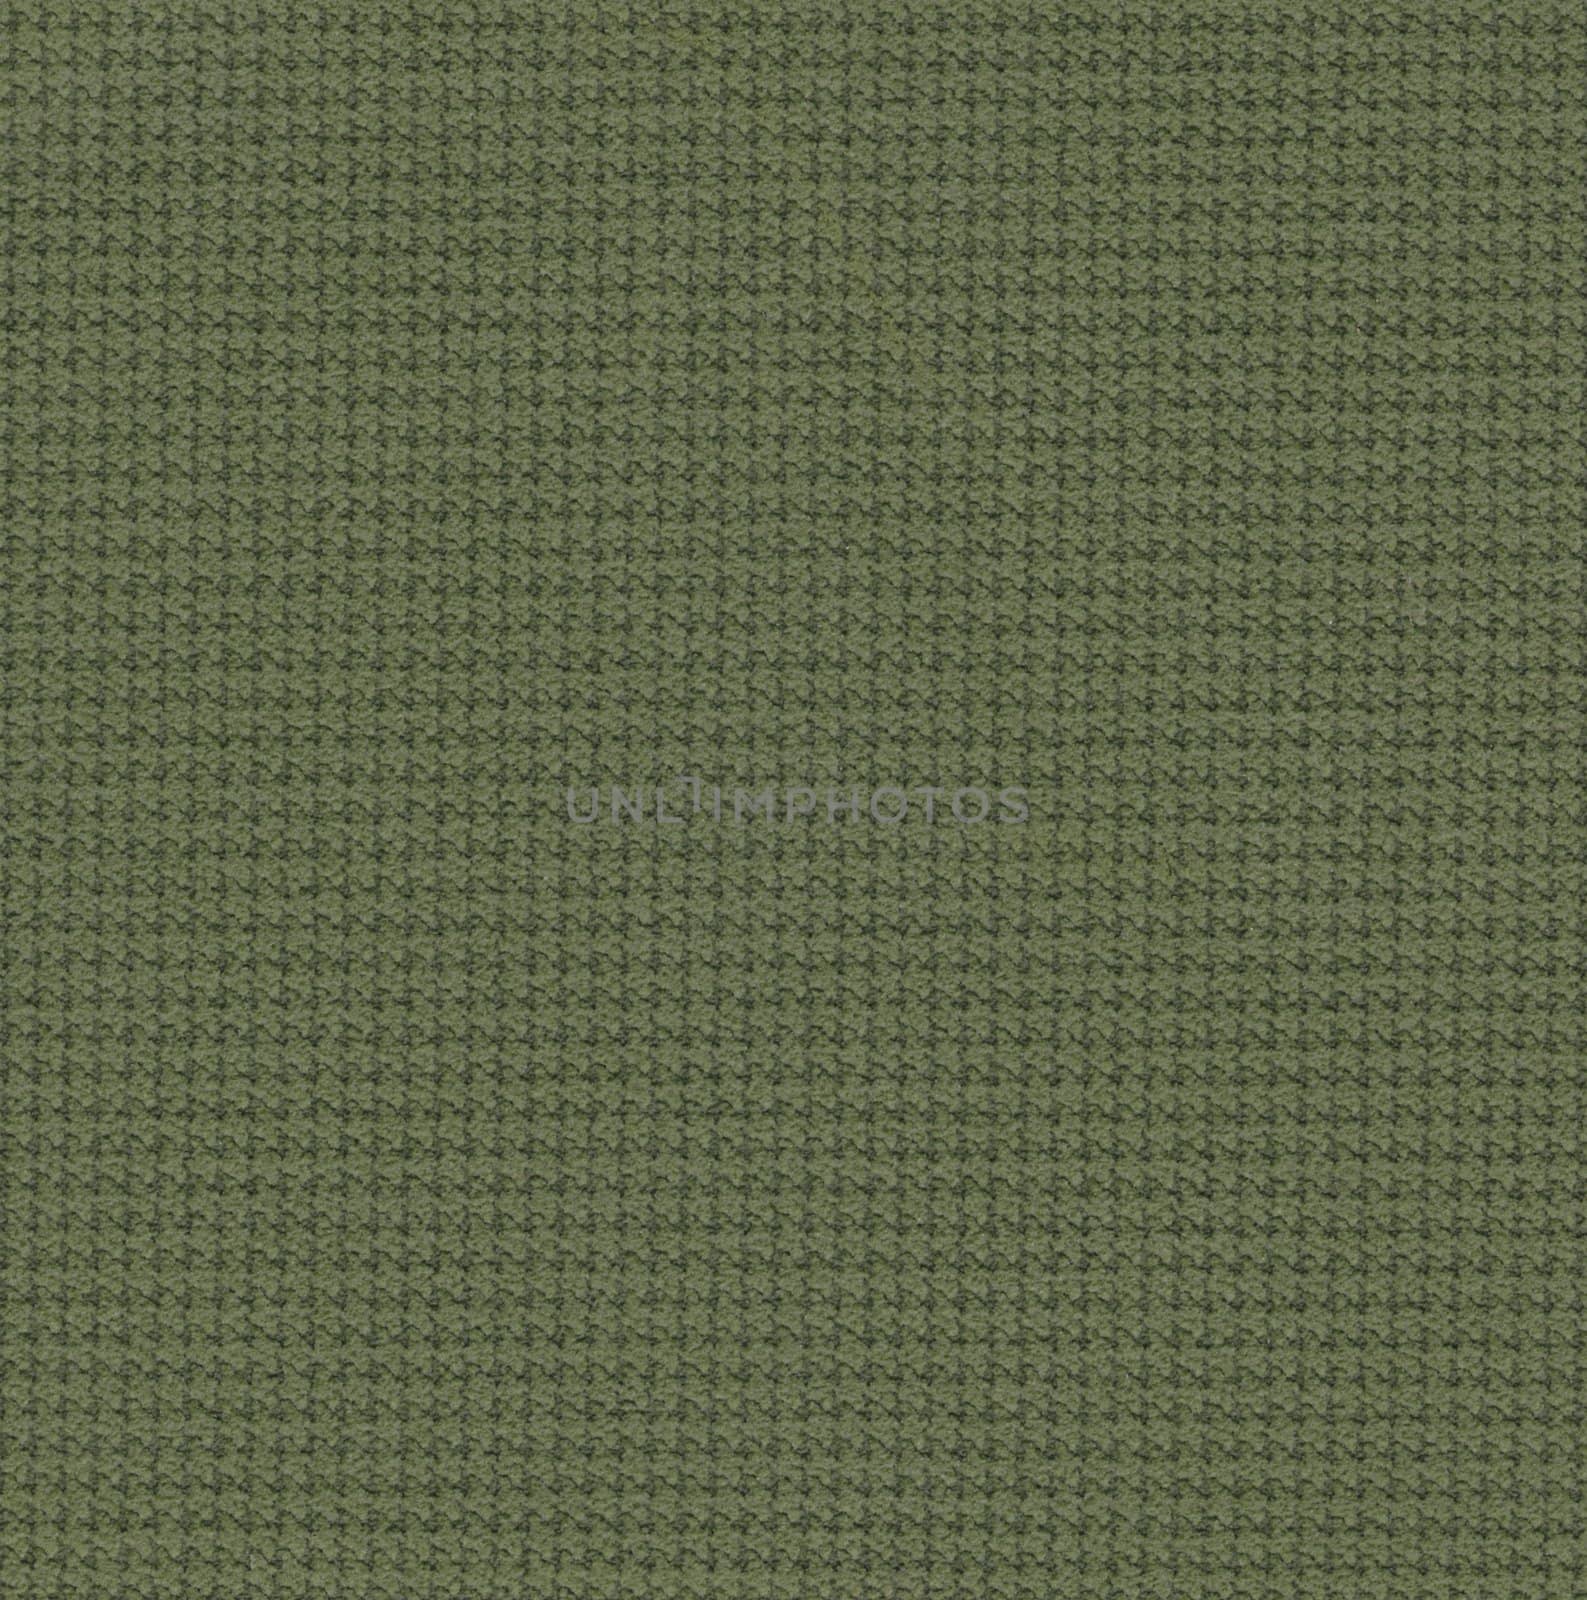 Dark Green fabric texture background